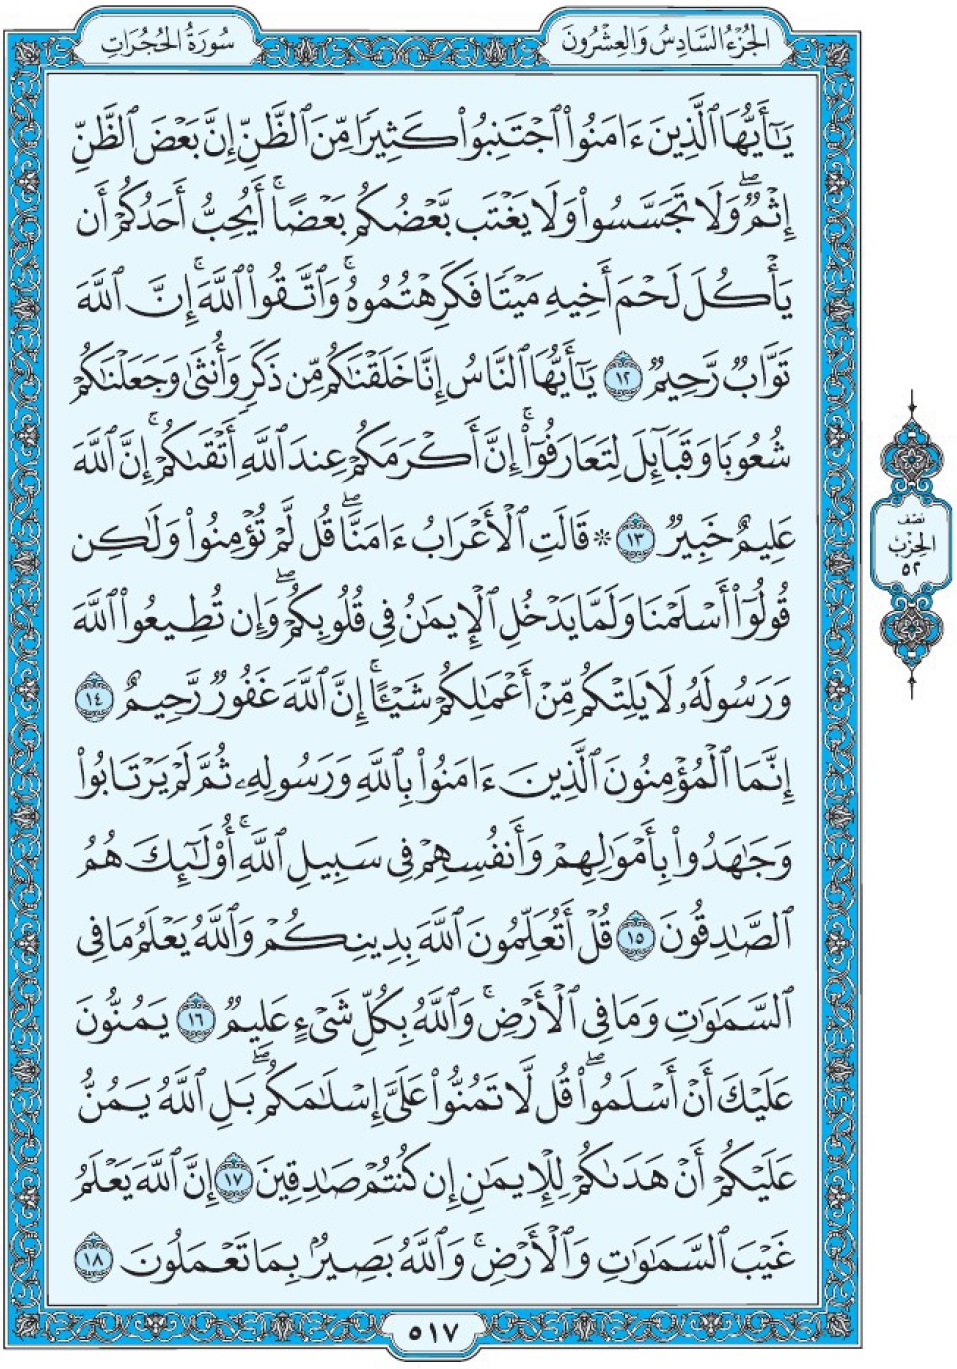 Коран Мединский мусхаф страница 517, аль-Худжират, аят 12-18